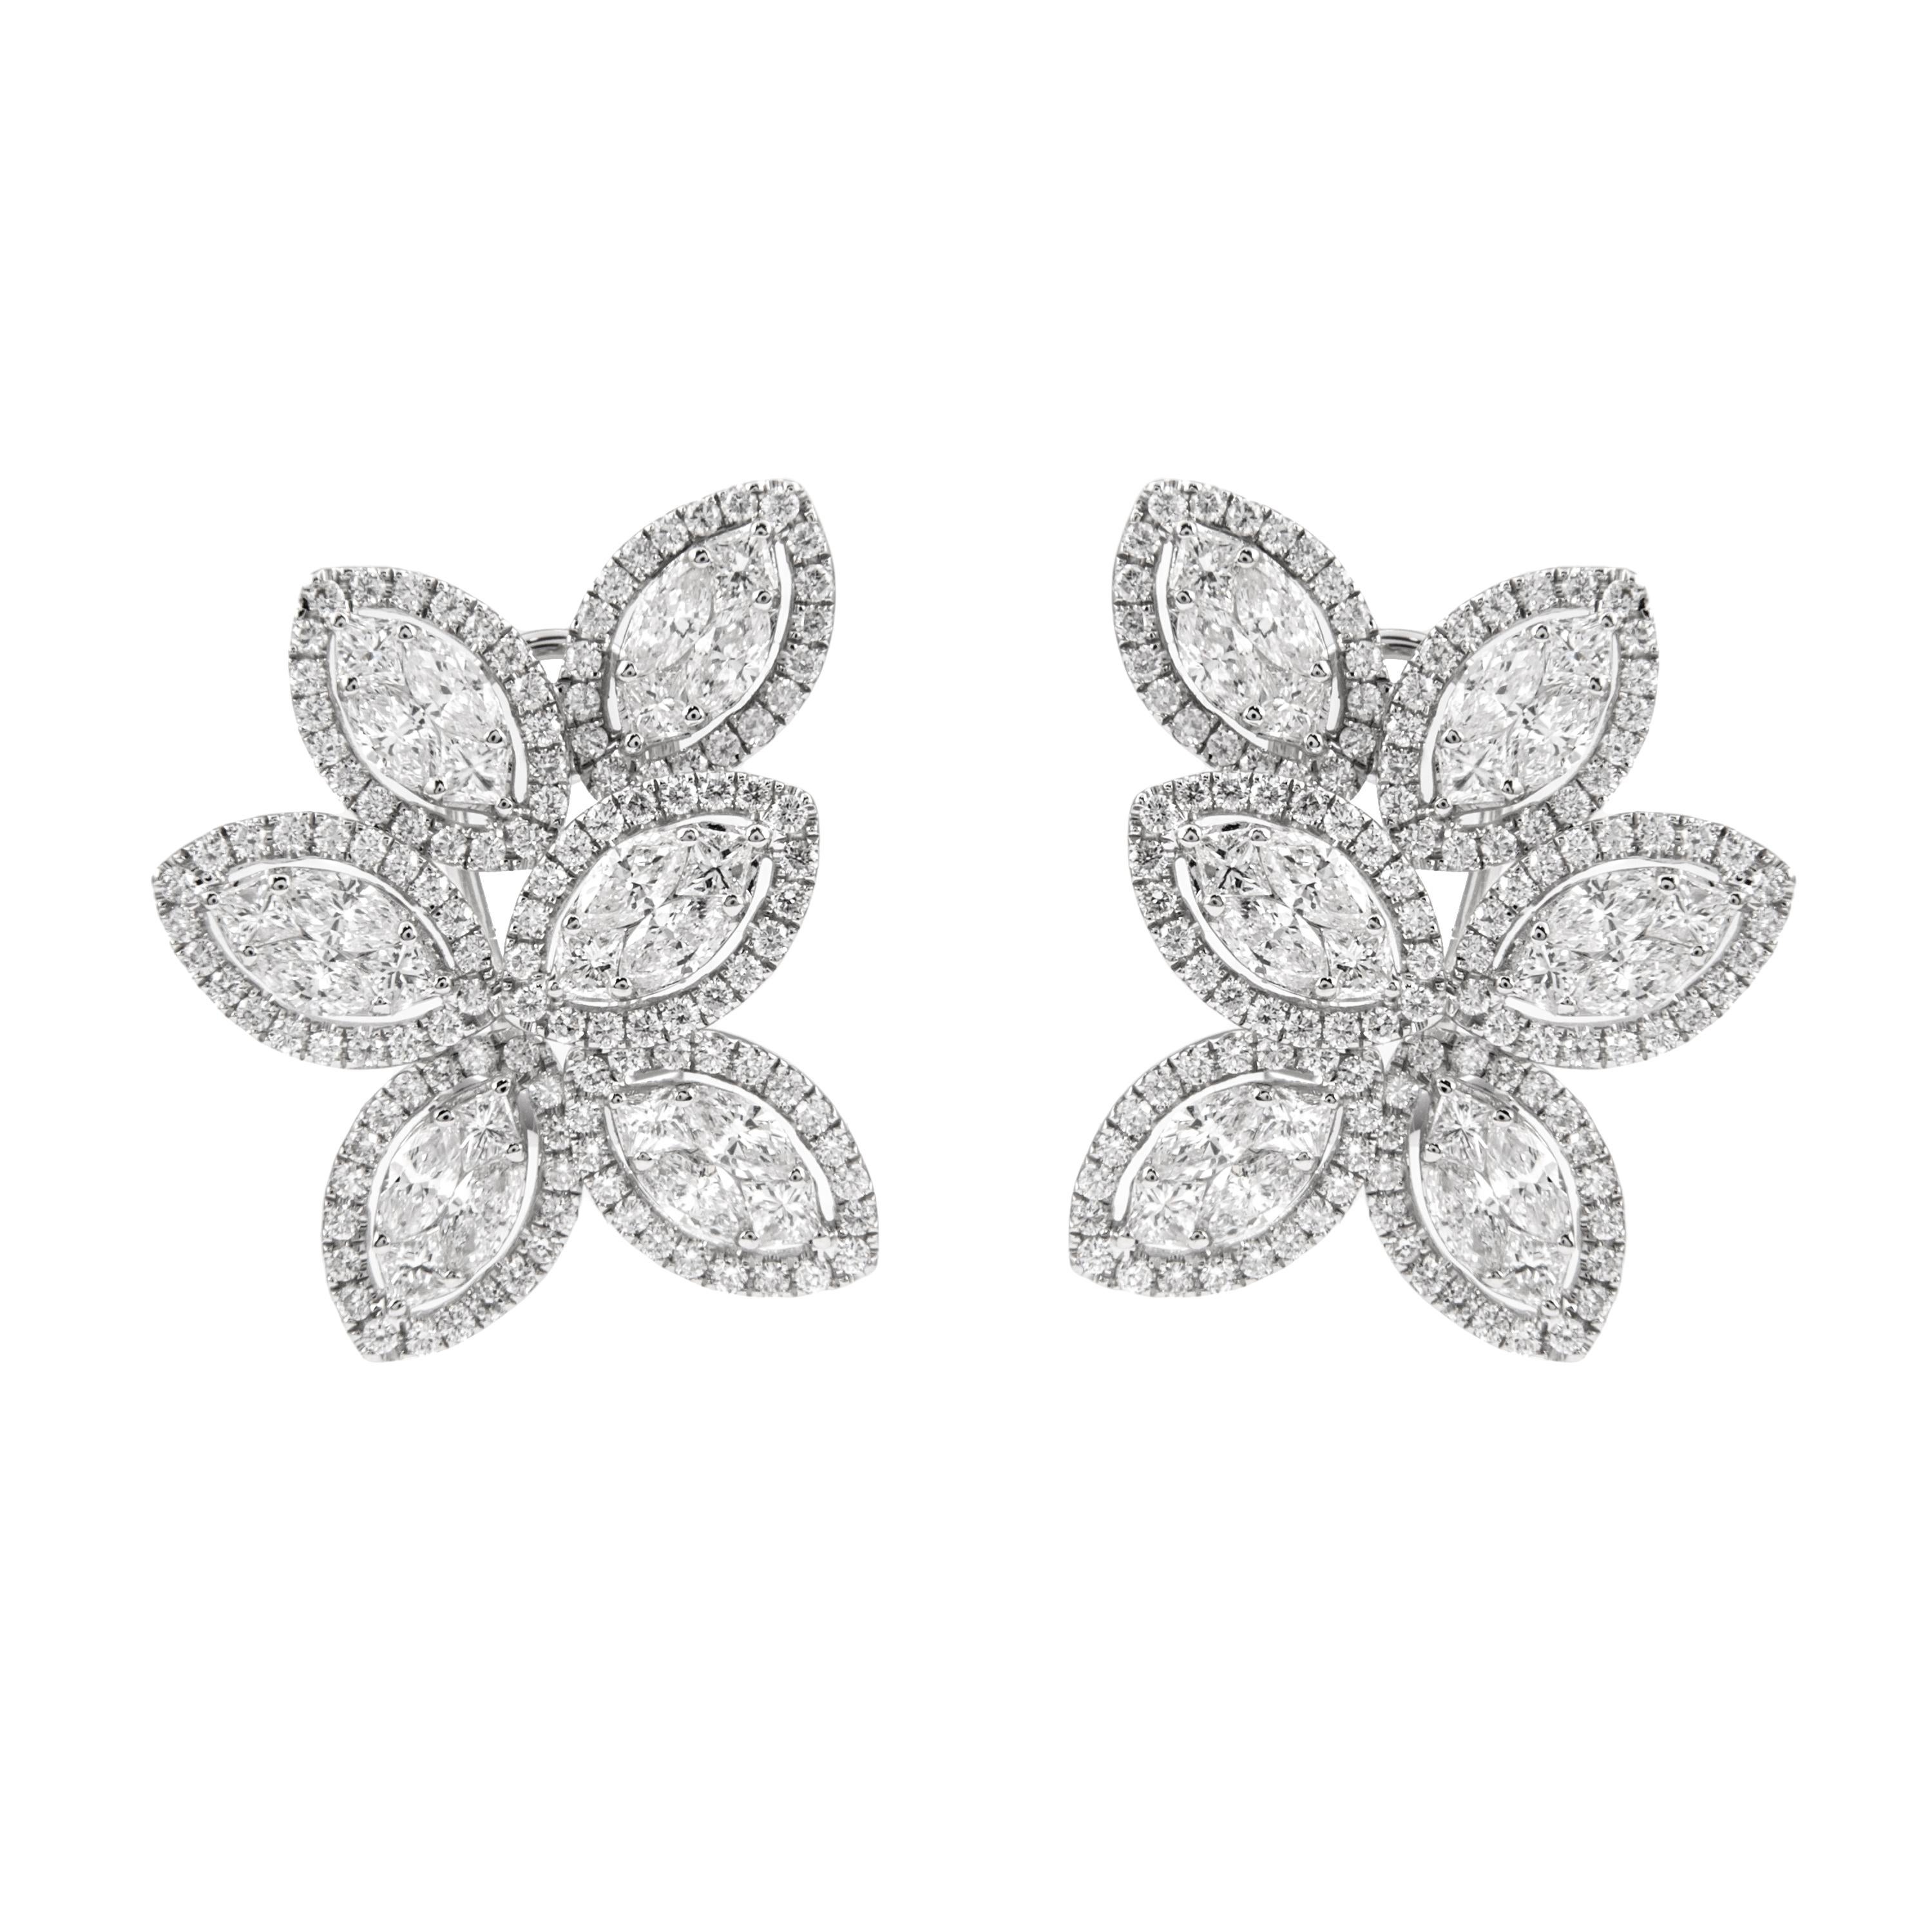 Modern Alexander 5.53ct Illusion Set Cluster Diamond Earrings 18k White Gold For Sale